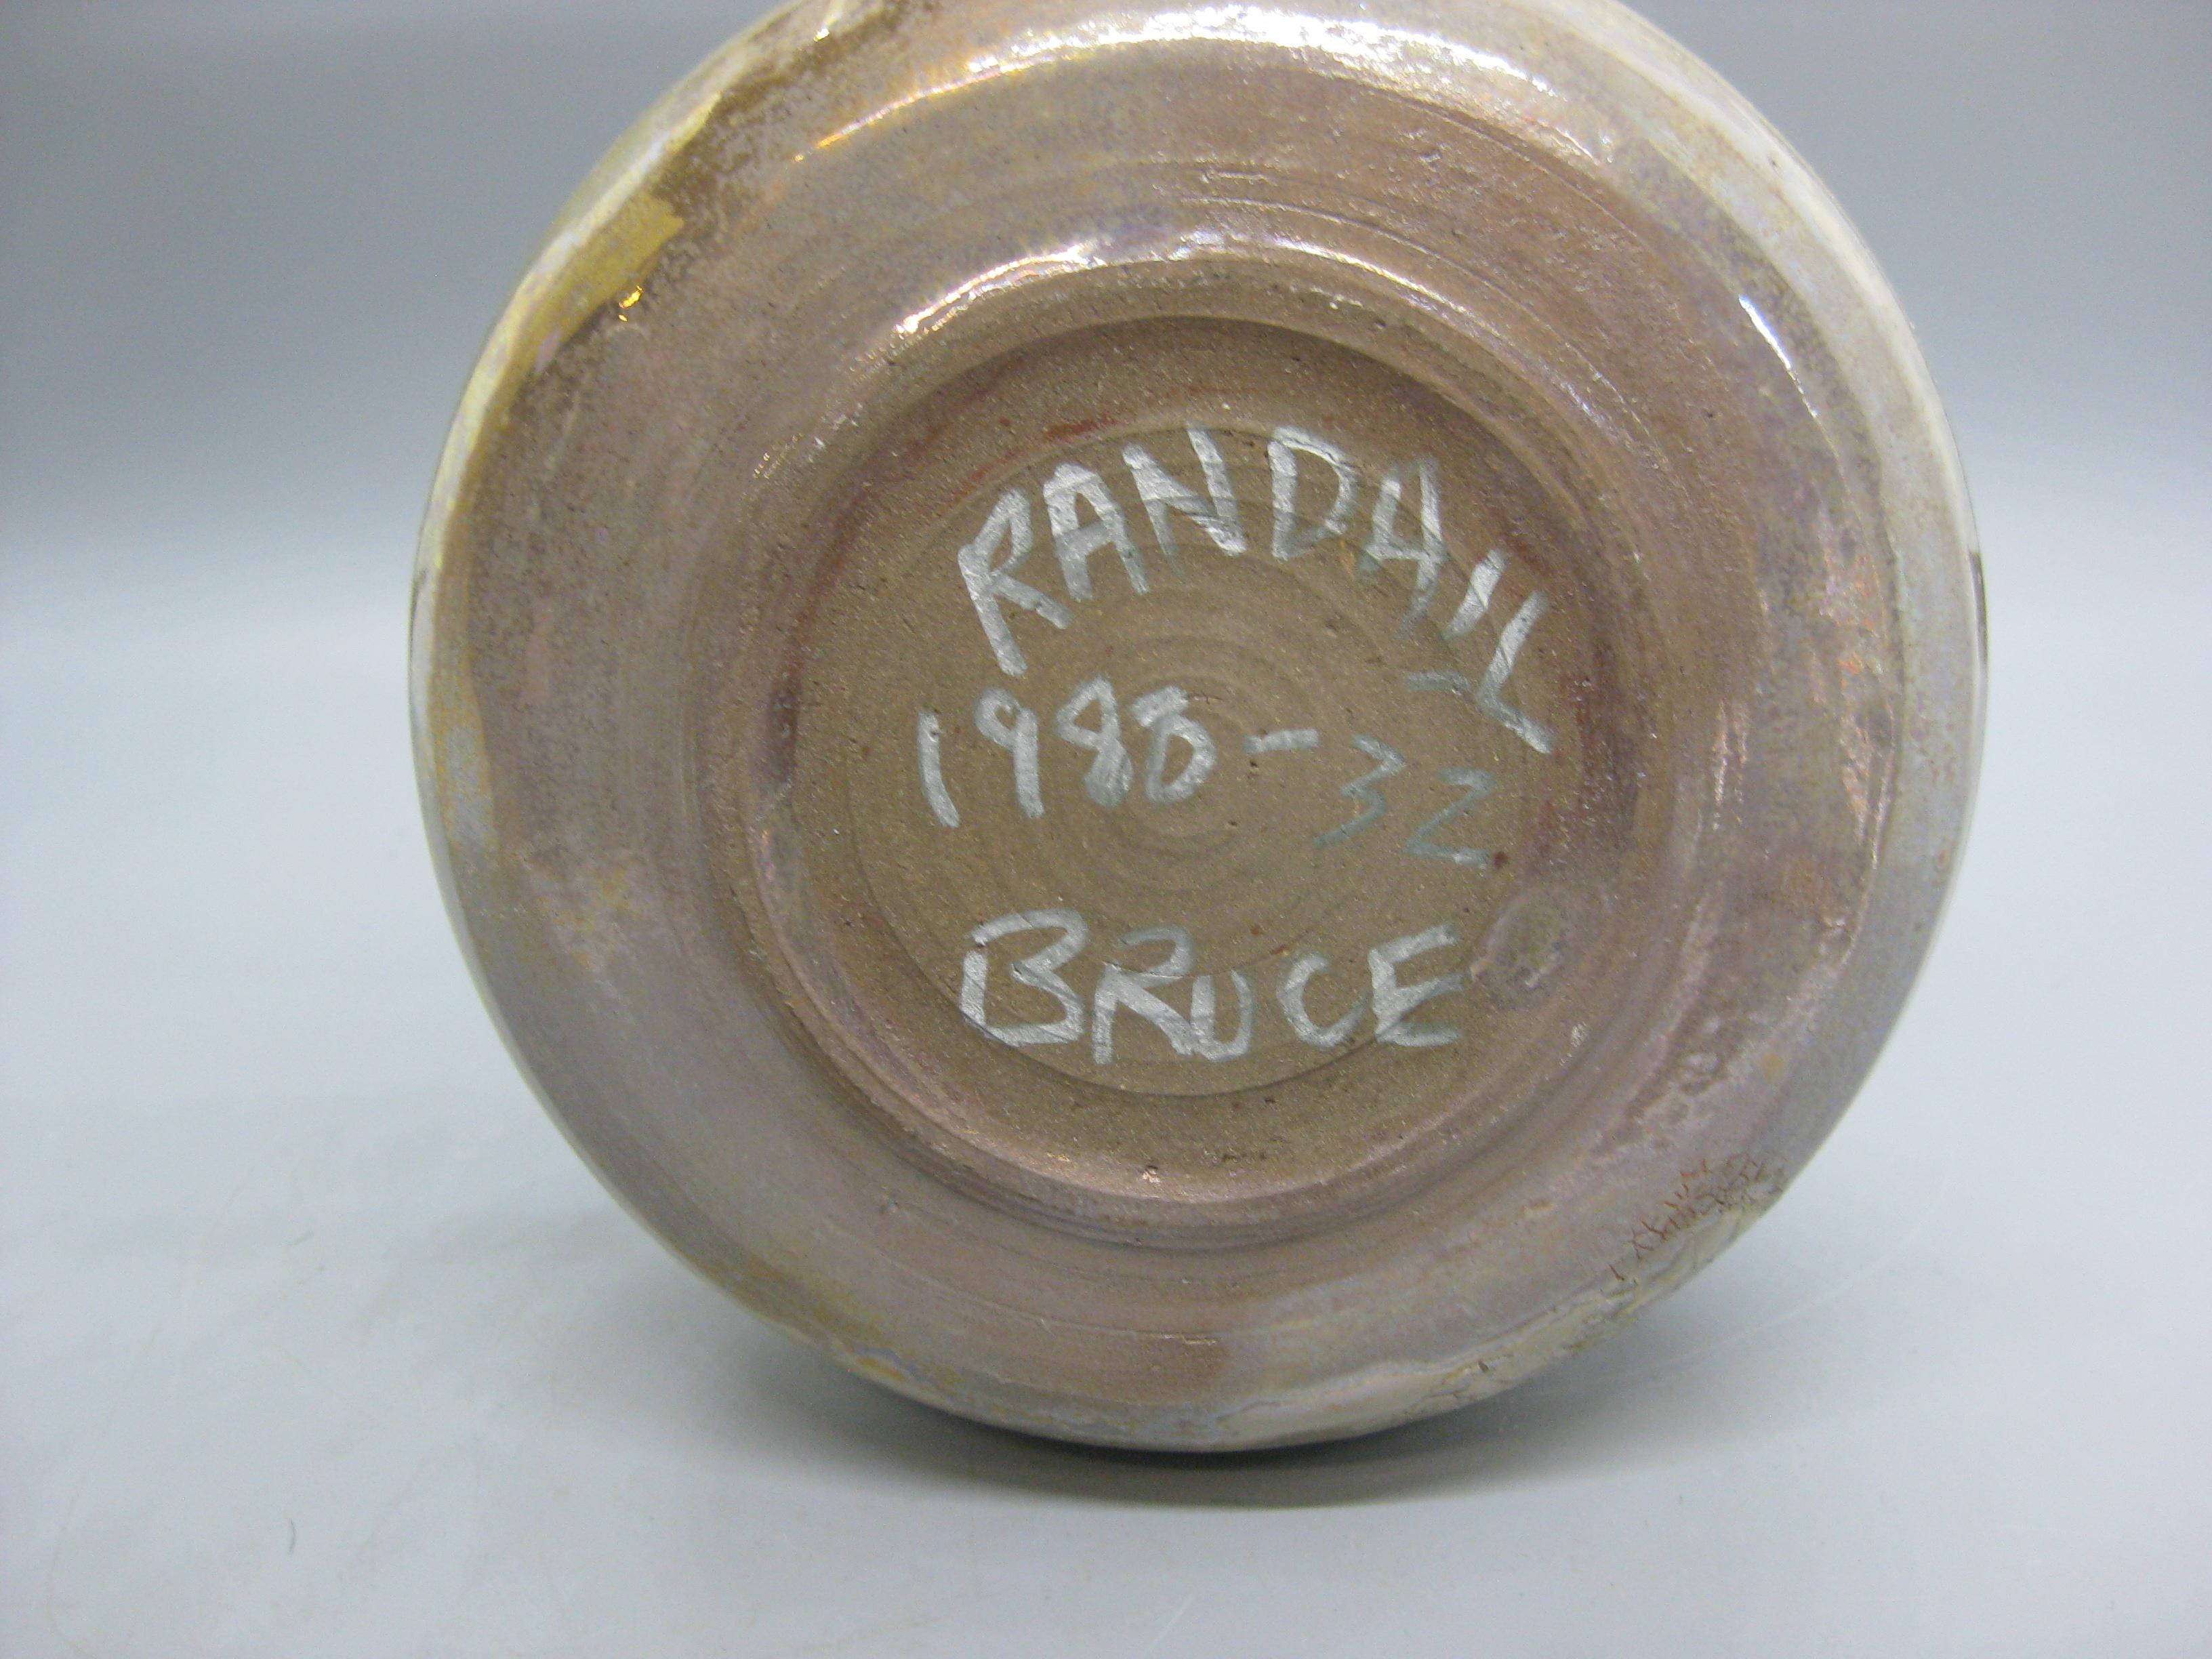 1988 Randall Bruce Luster Studio Art Pottery Ceramic Weed Vase California Design For Sale 7